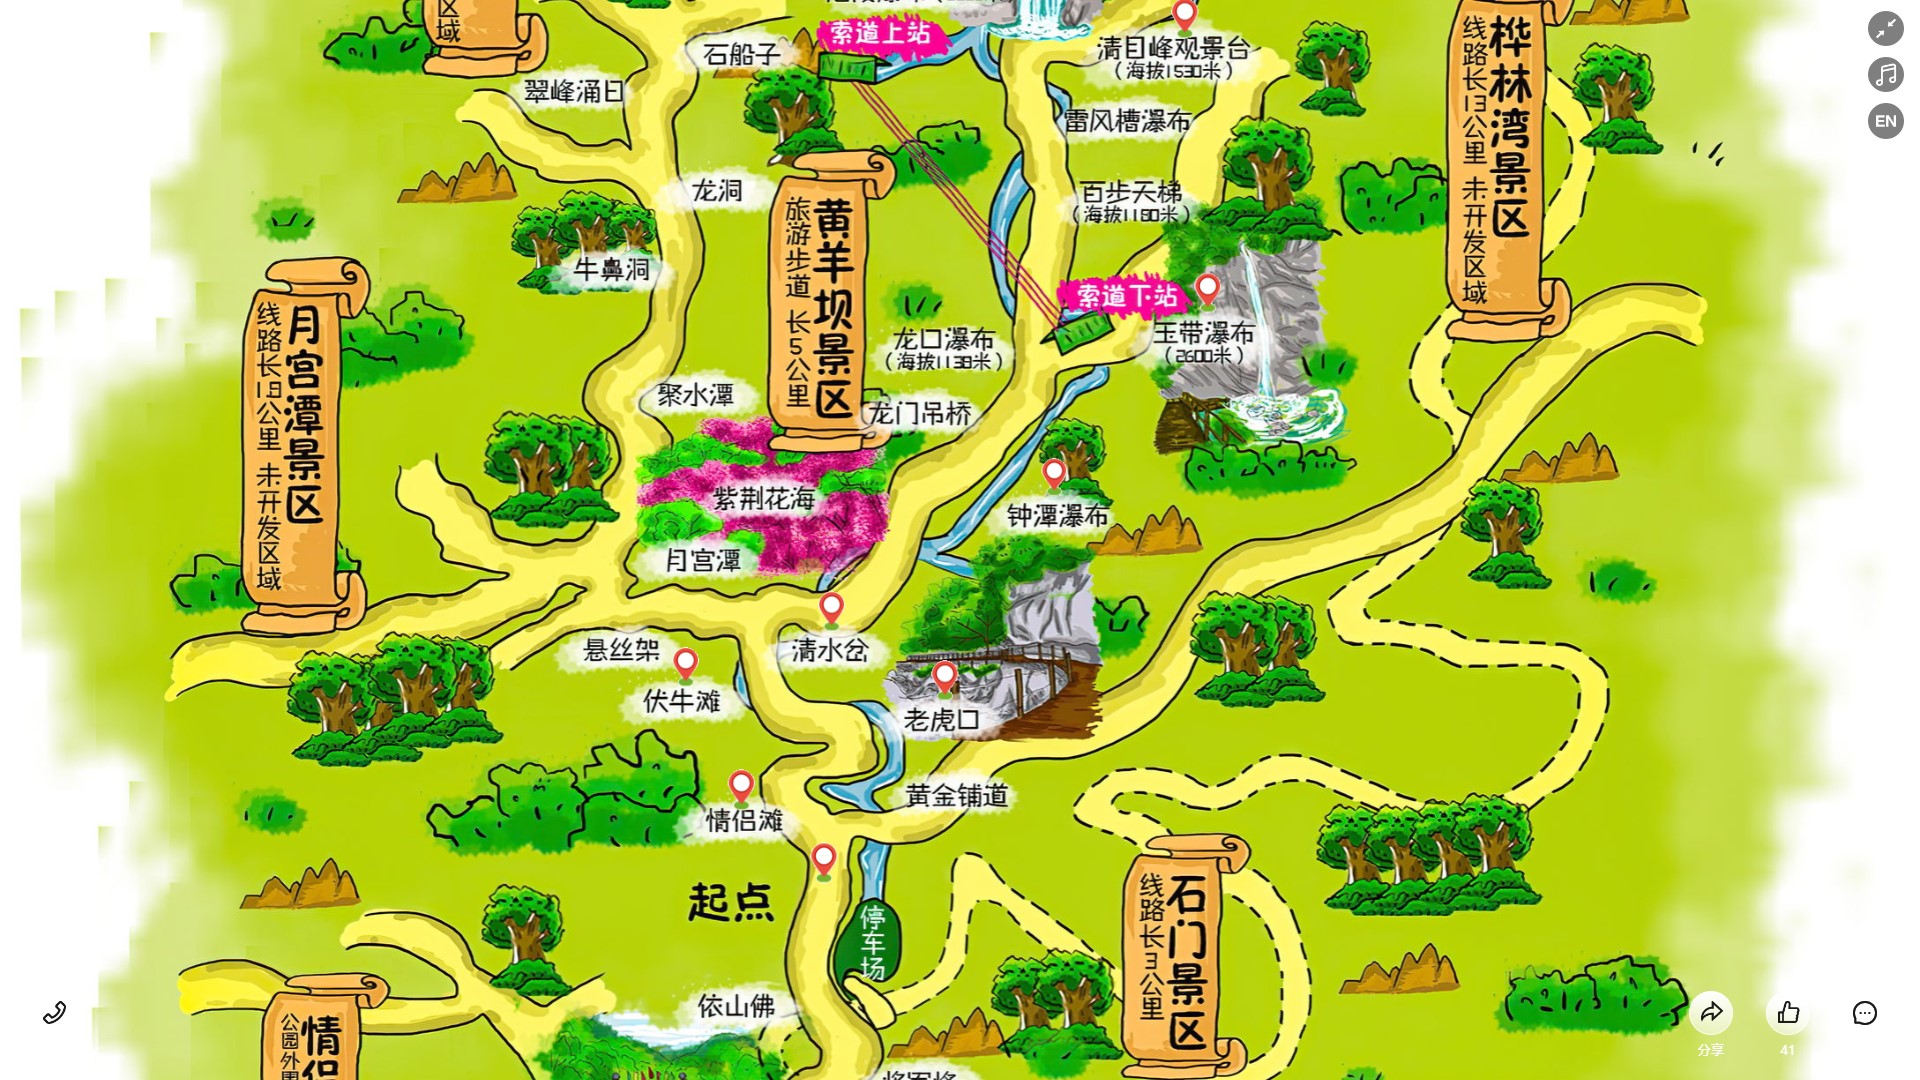 龙河镇景区导览系统